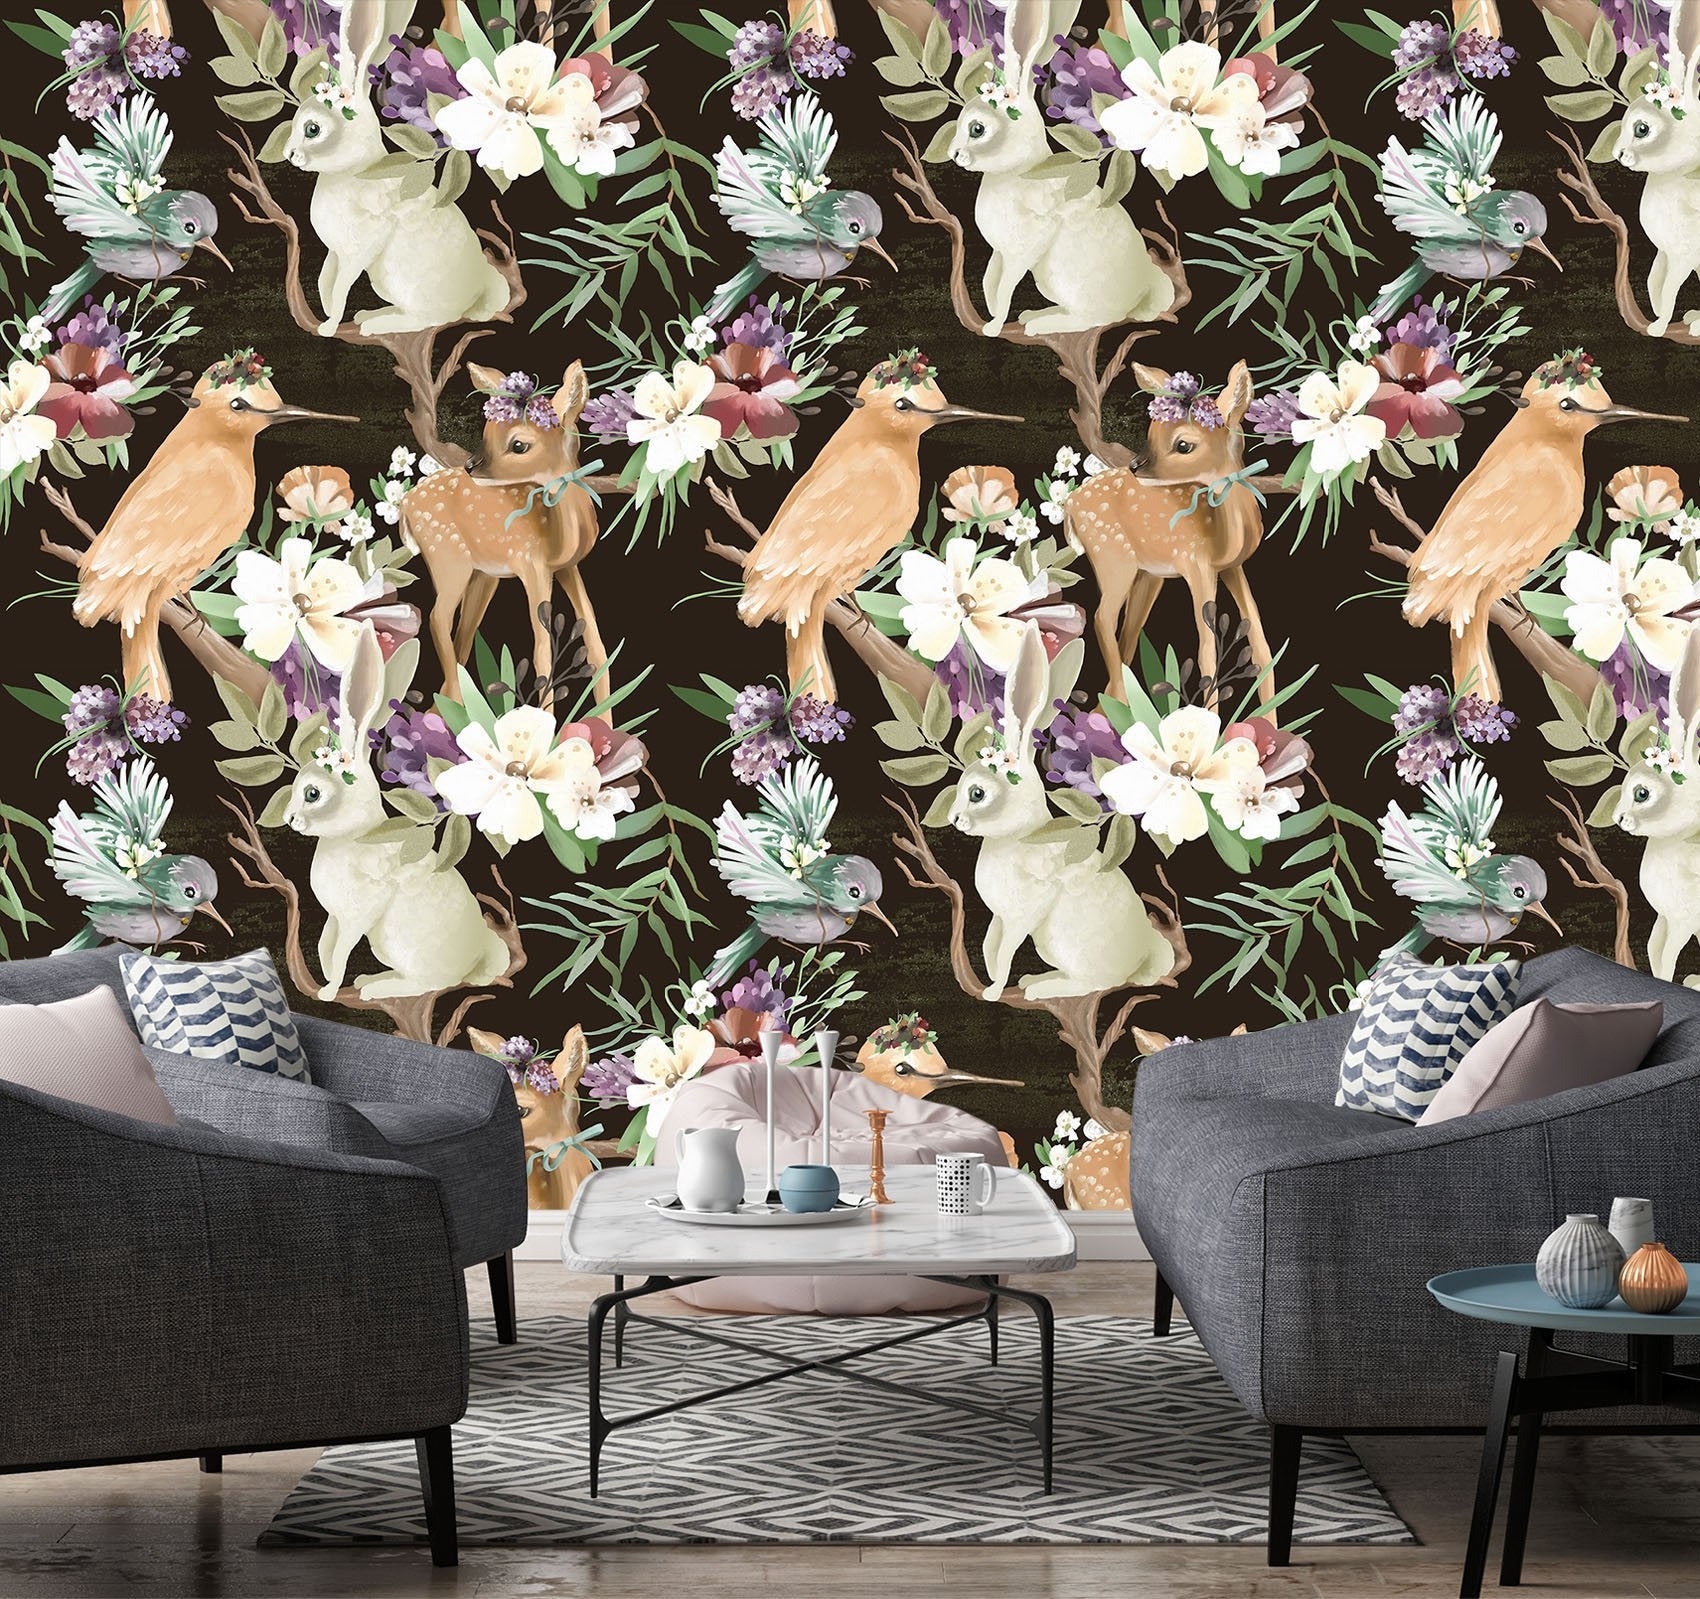 3D Deer Rabbit Bird 694 Wallpaper AJ Wallpaper 2 